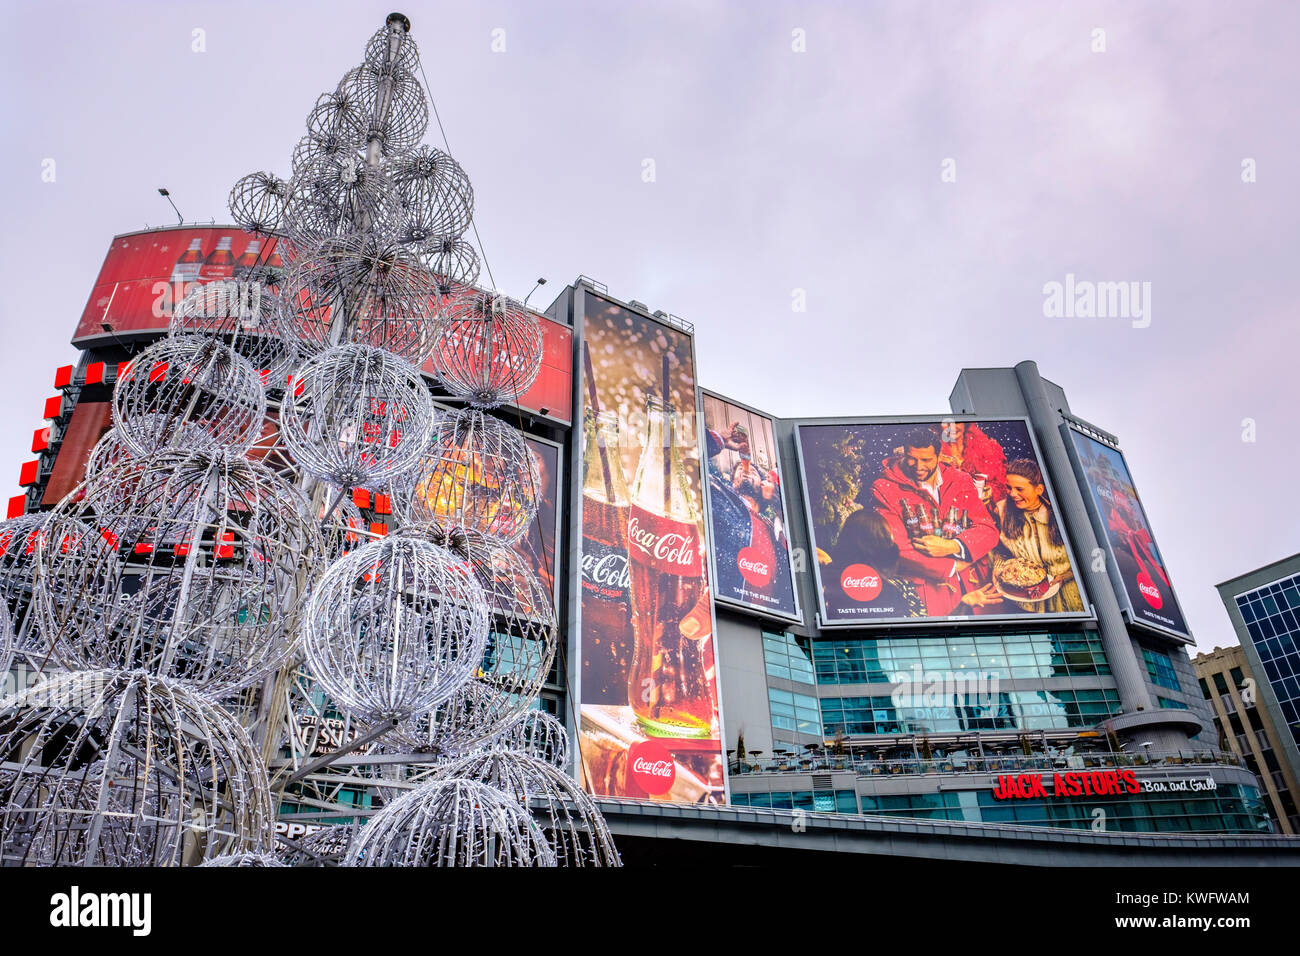 Dundas Square Noël Coca-Cola, les panneaux d'angle de la rue Yonge et Dundas Street, le centre-ville de Toronto, Ontario, Canada. Banque D'Images